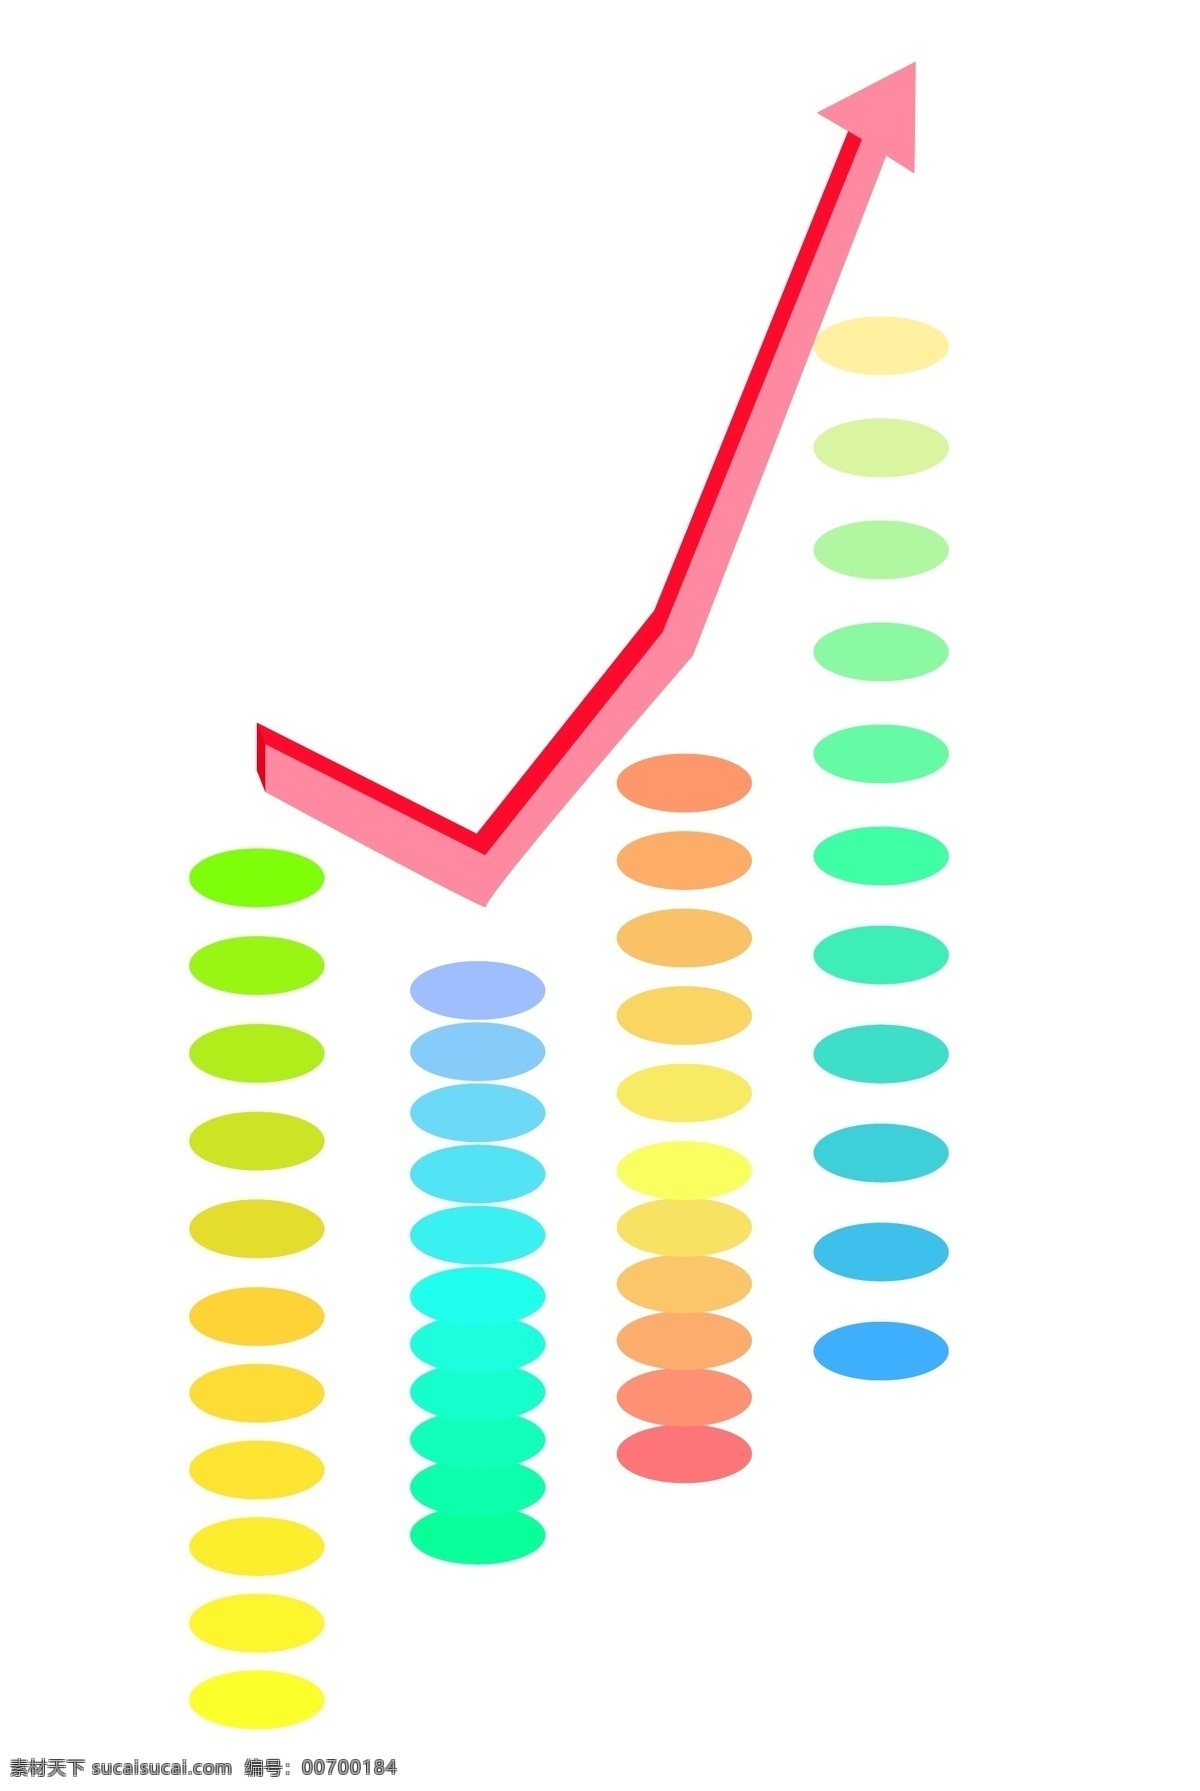 彩色 圆点 金融 理财 插图 圆点趋势图 上升趋势图 红色箭头 用户分析 销售额 数据 商务数据 装饰数据 卡通图案